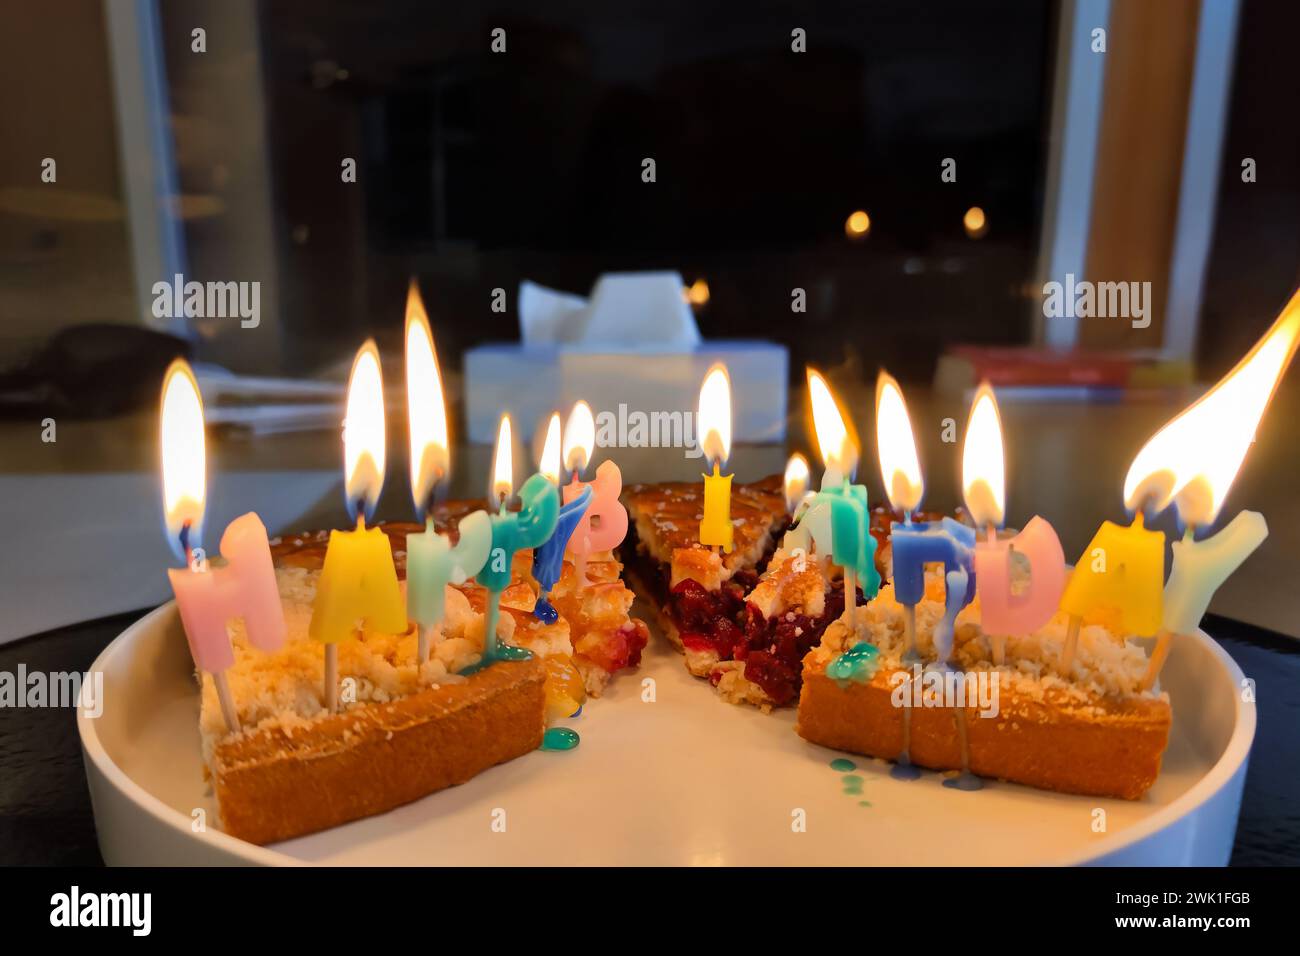 Unordentliche Geburtstagskuchen bunte bunt brennende und schmelzende Happy Birthday Kerzen auf Kuchenscheiben, die auf einem Teller ausgestellt werden, machen ein Happy Birthday Chaos. Stockfoto